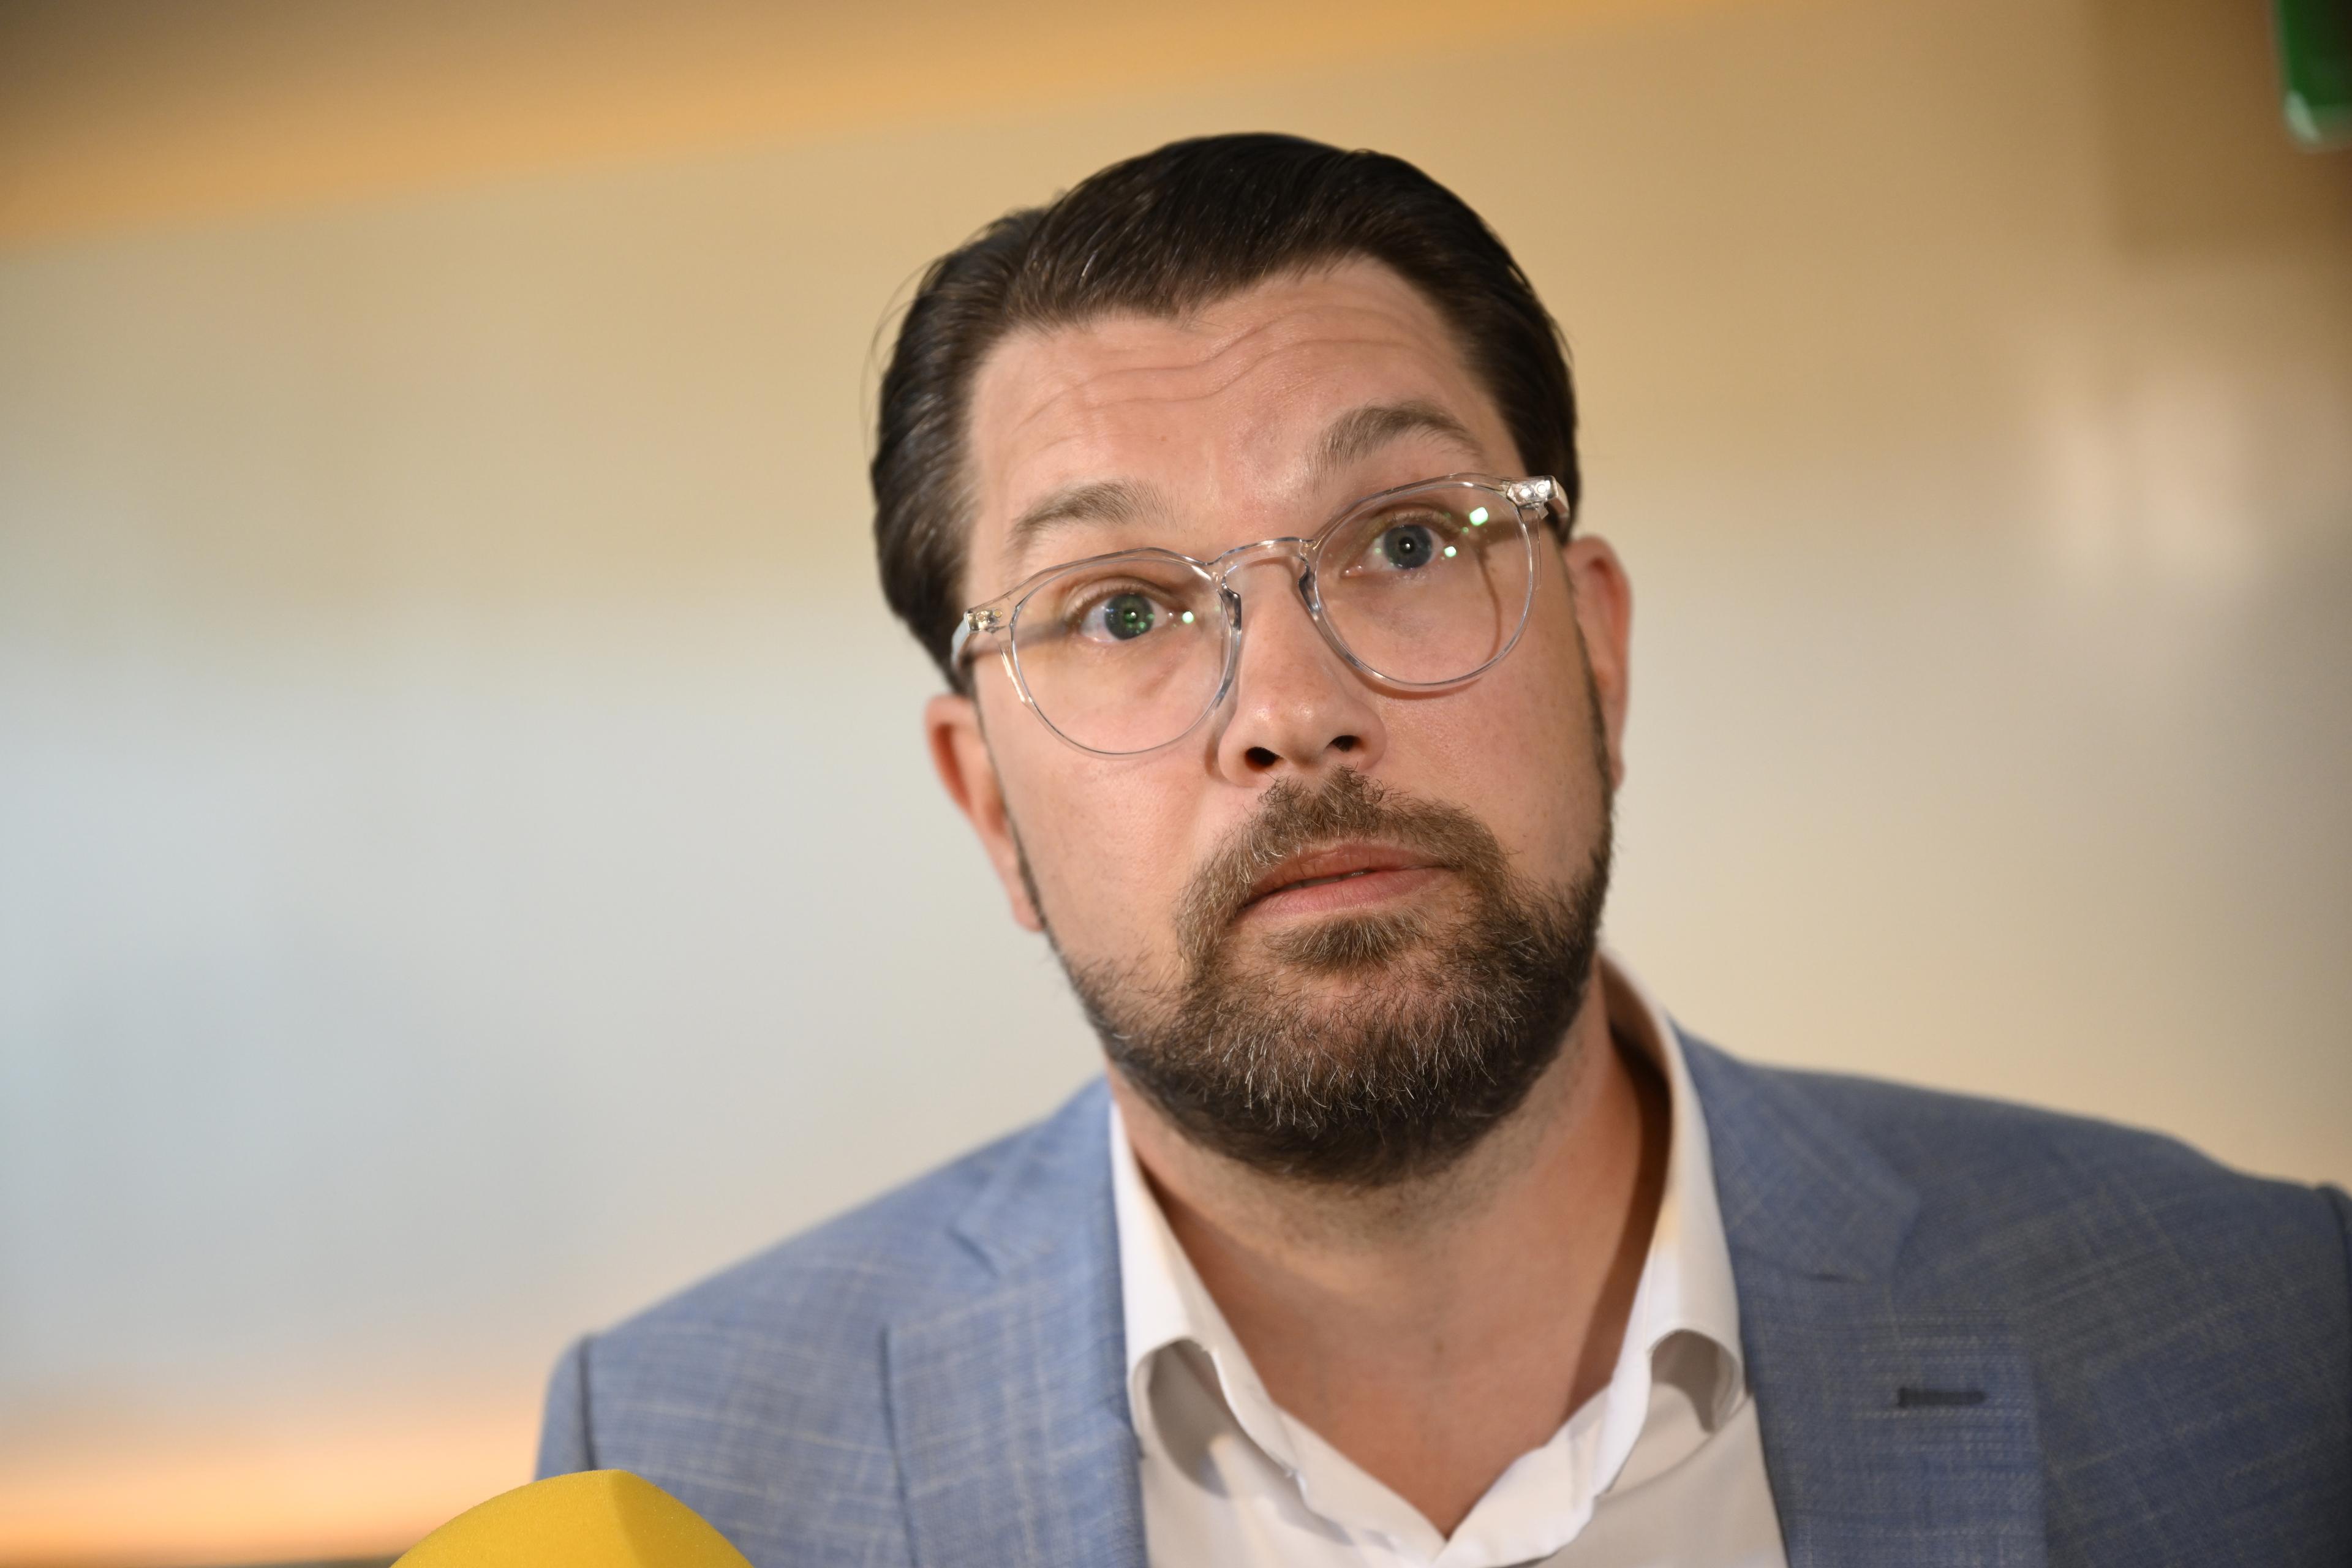 Sverigedemokraternas partiledare Jimmie Åkesson (SD) blev avbruten av demonstranter när han talade vid ett valmöte i Helsingborg. Arkivbild. Foto: Pontus Lundahl/TT